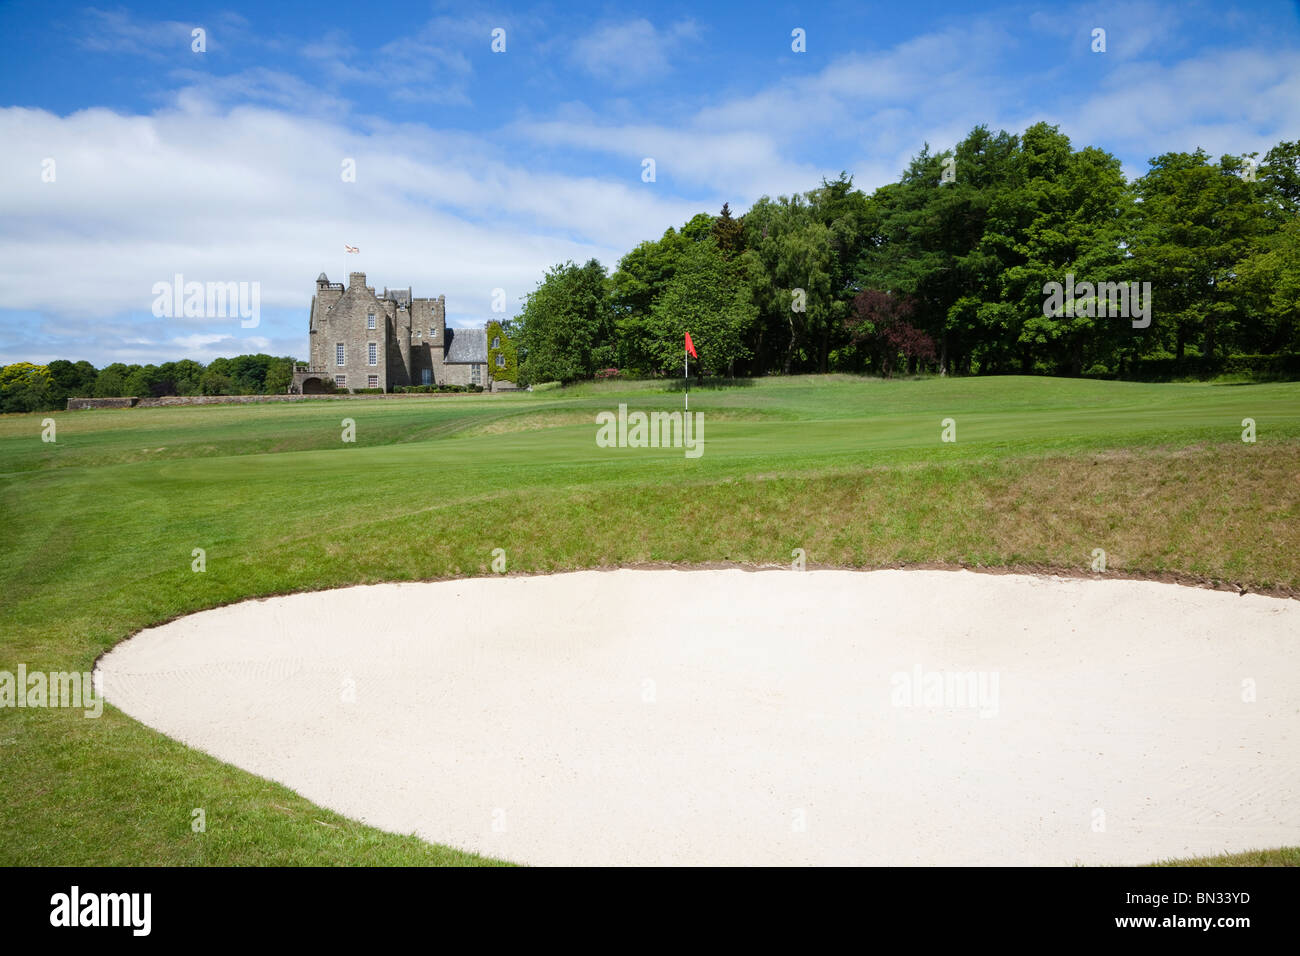 Rowallan Castle, Golfclub in der Nähe von Kilmaurs, Ayrshire, Schottland. Blick auf 19. Grün. Kurs von Colin Montgomery. Stockfoto